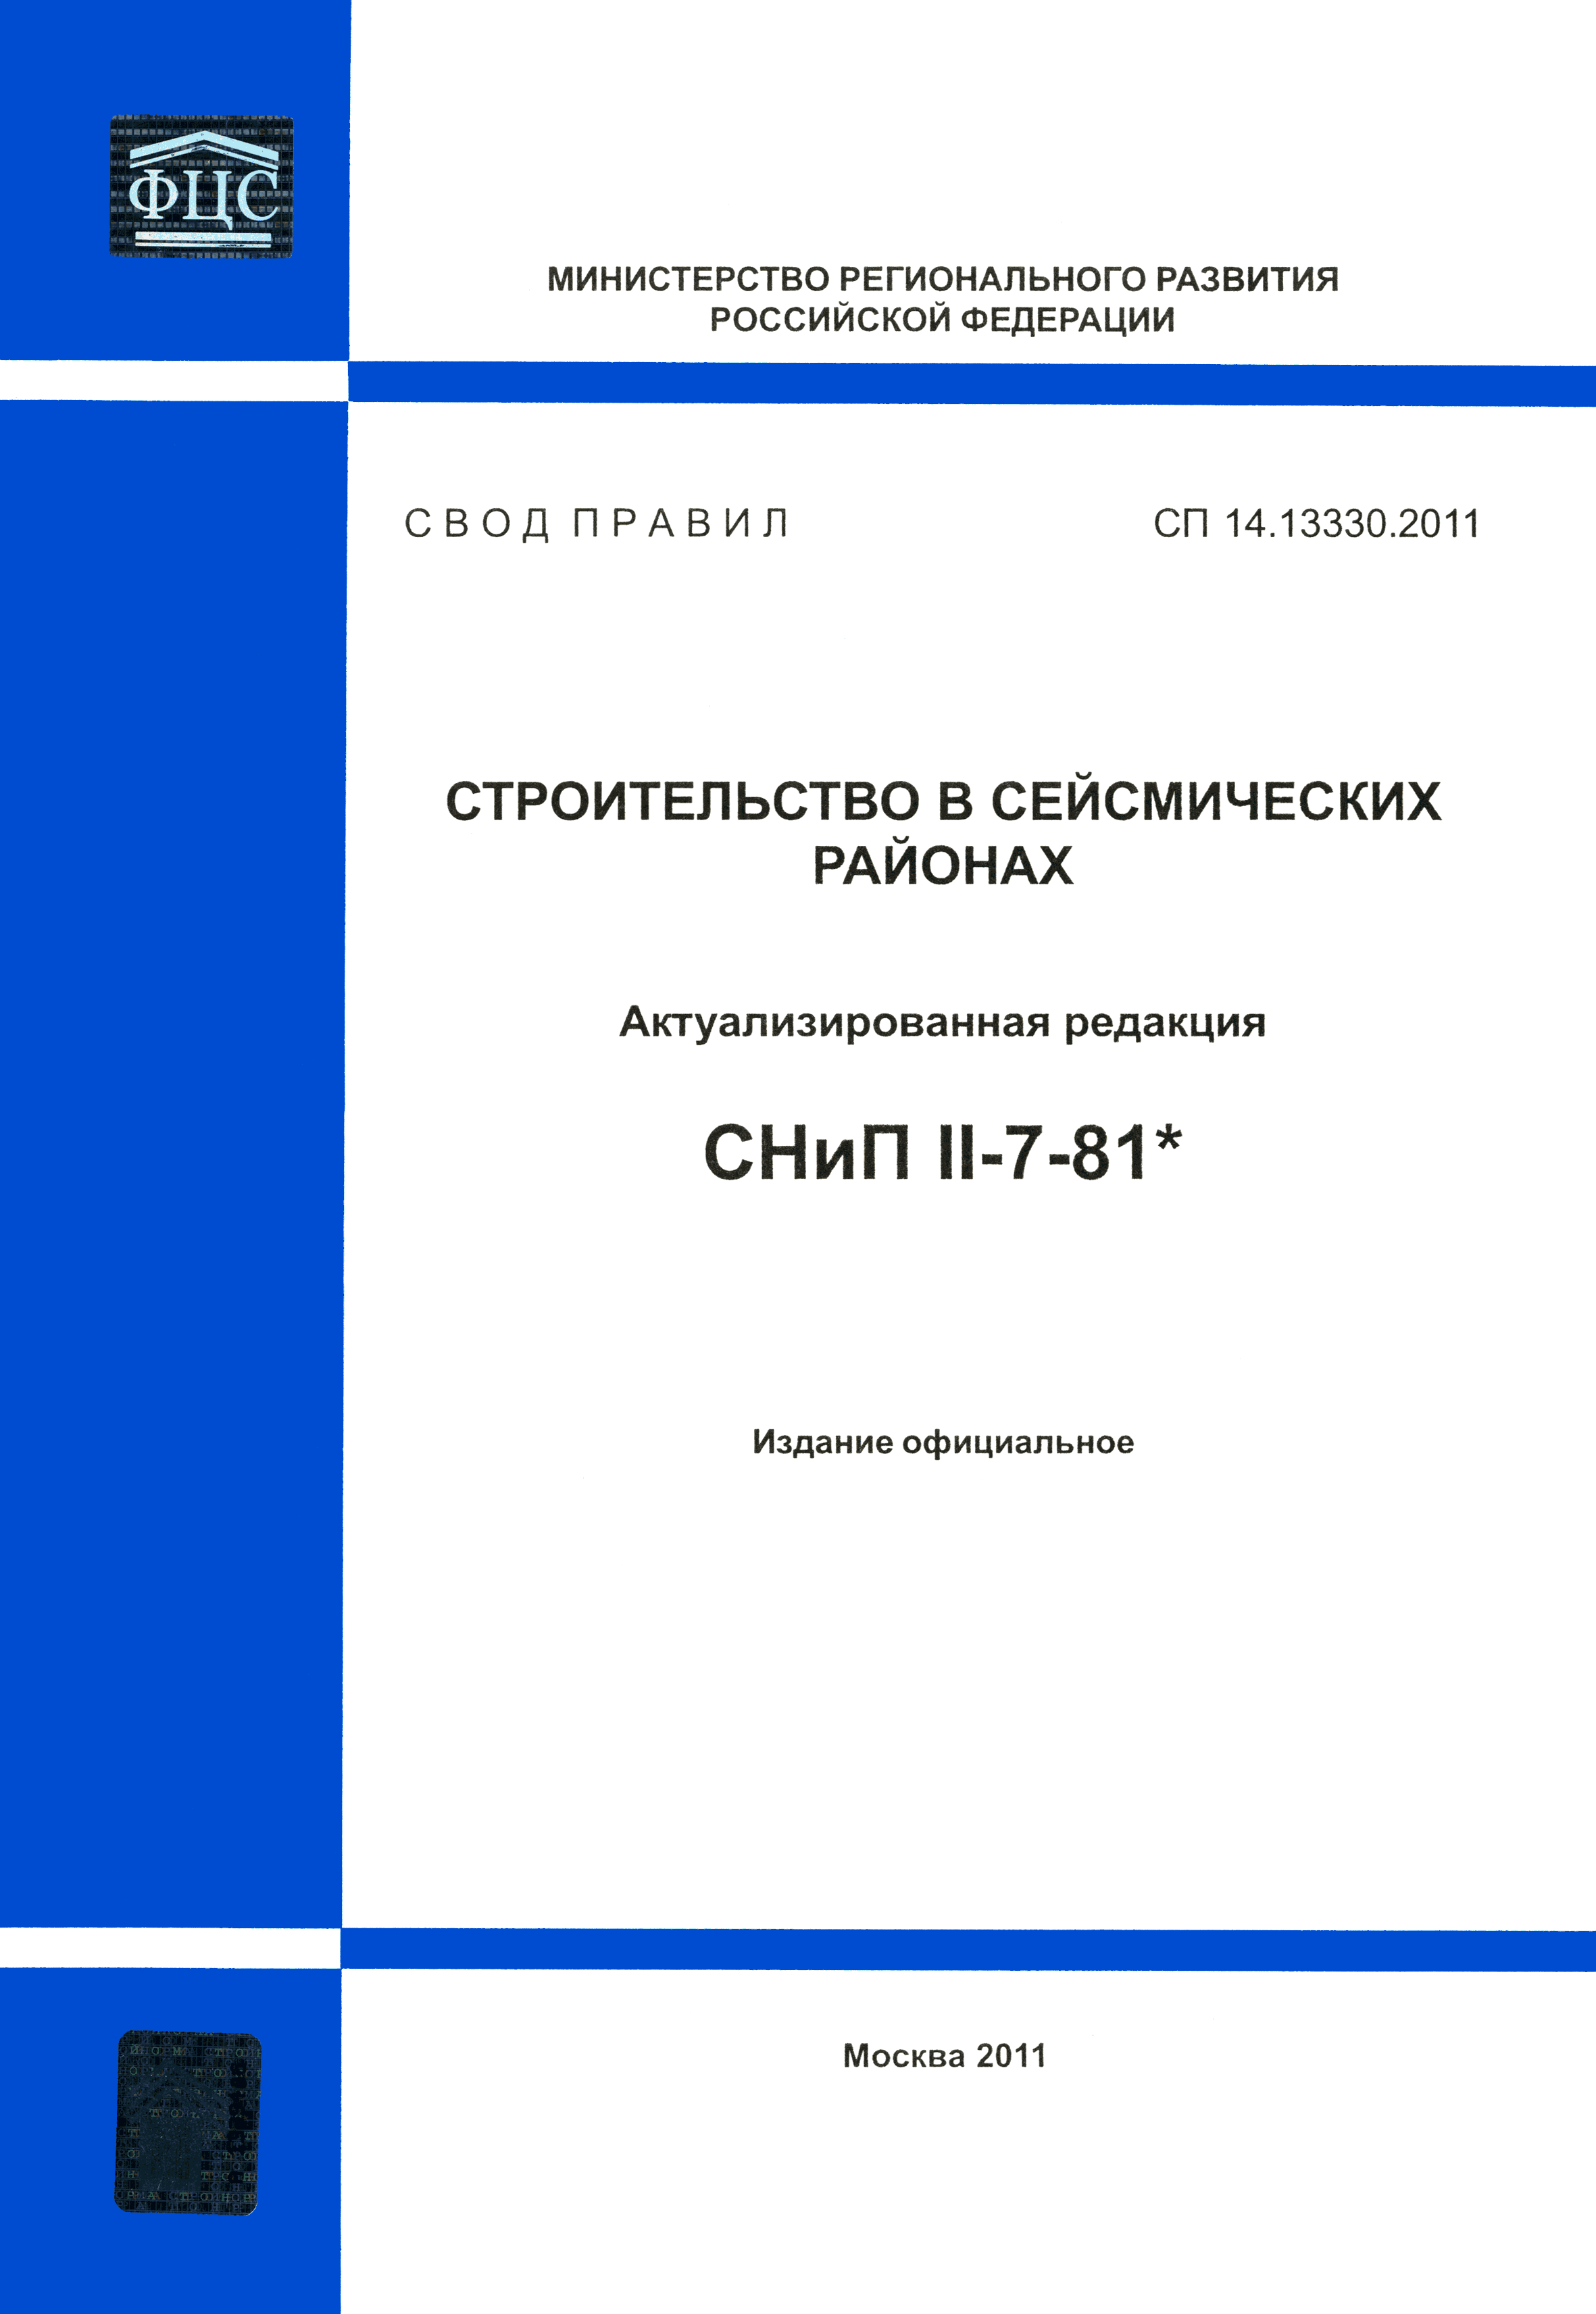 СП 14.13330.2011